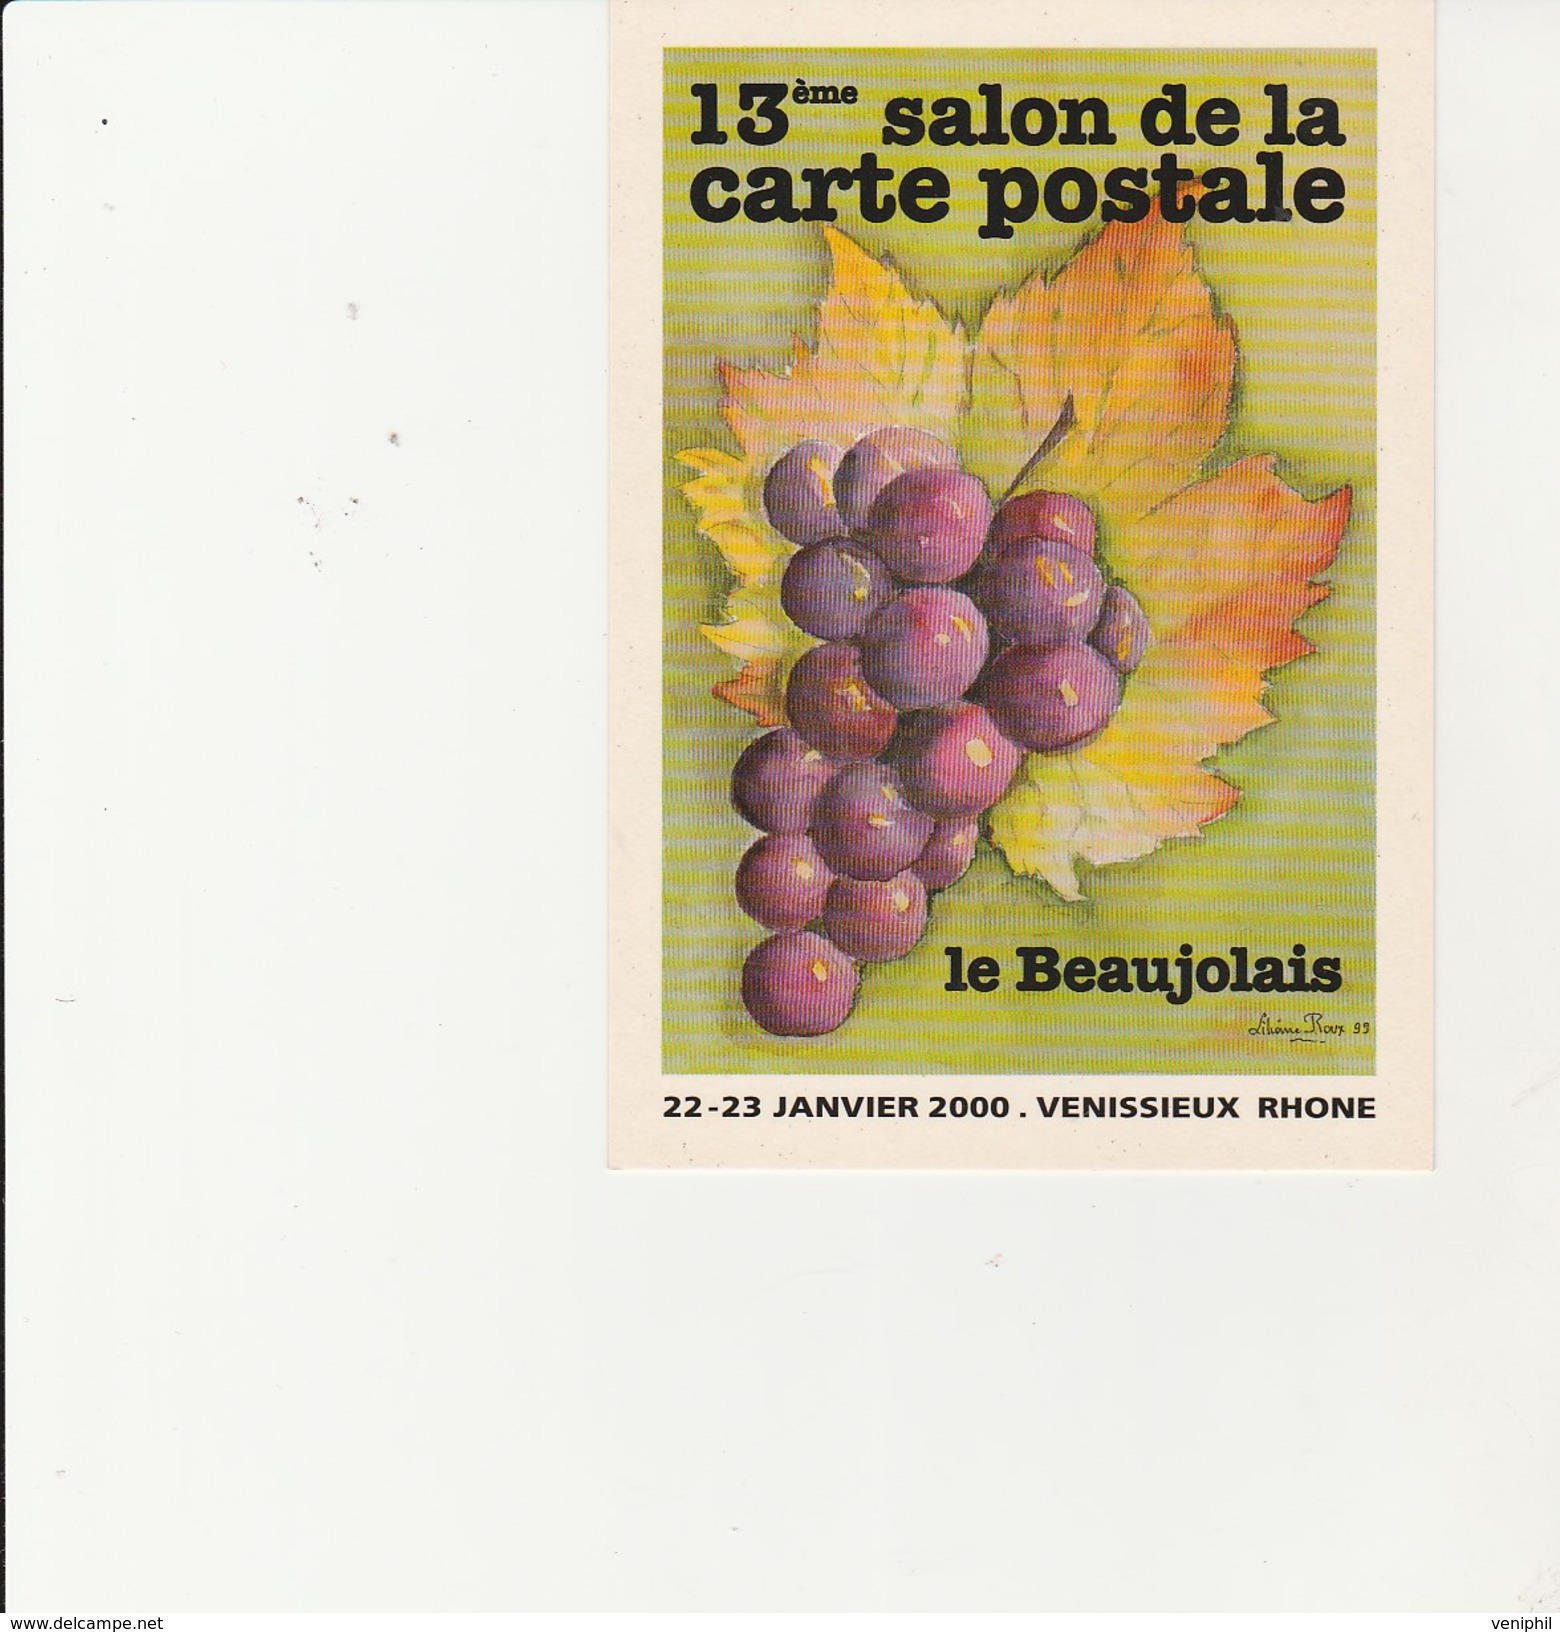 VENISSIEUX - 13 EME SALON DE LA CARTE POSTALE  -22-23 JANV 2000 - THEME / LE BEAUJOLAIS -DESSIN DE LILIANE ROUX - Bourses & Salons De Collections